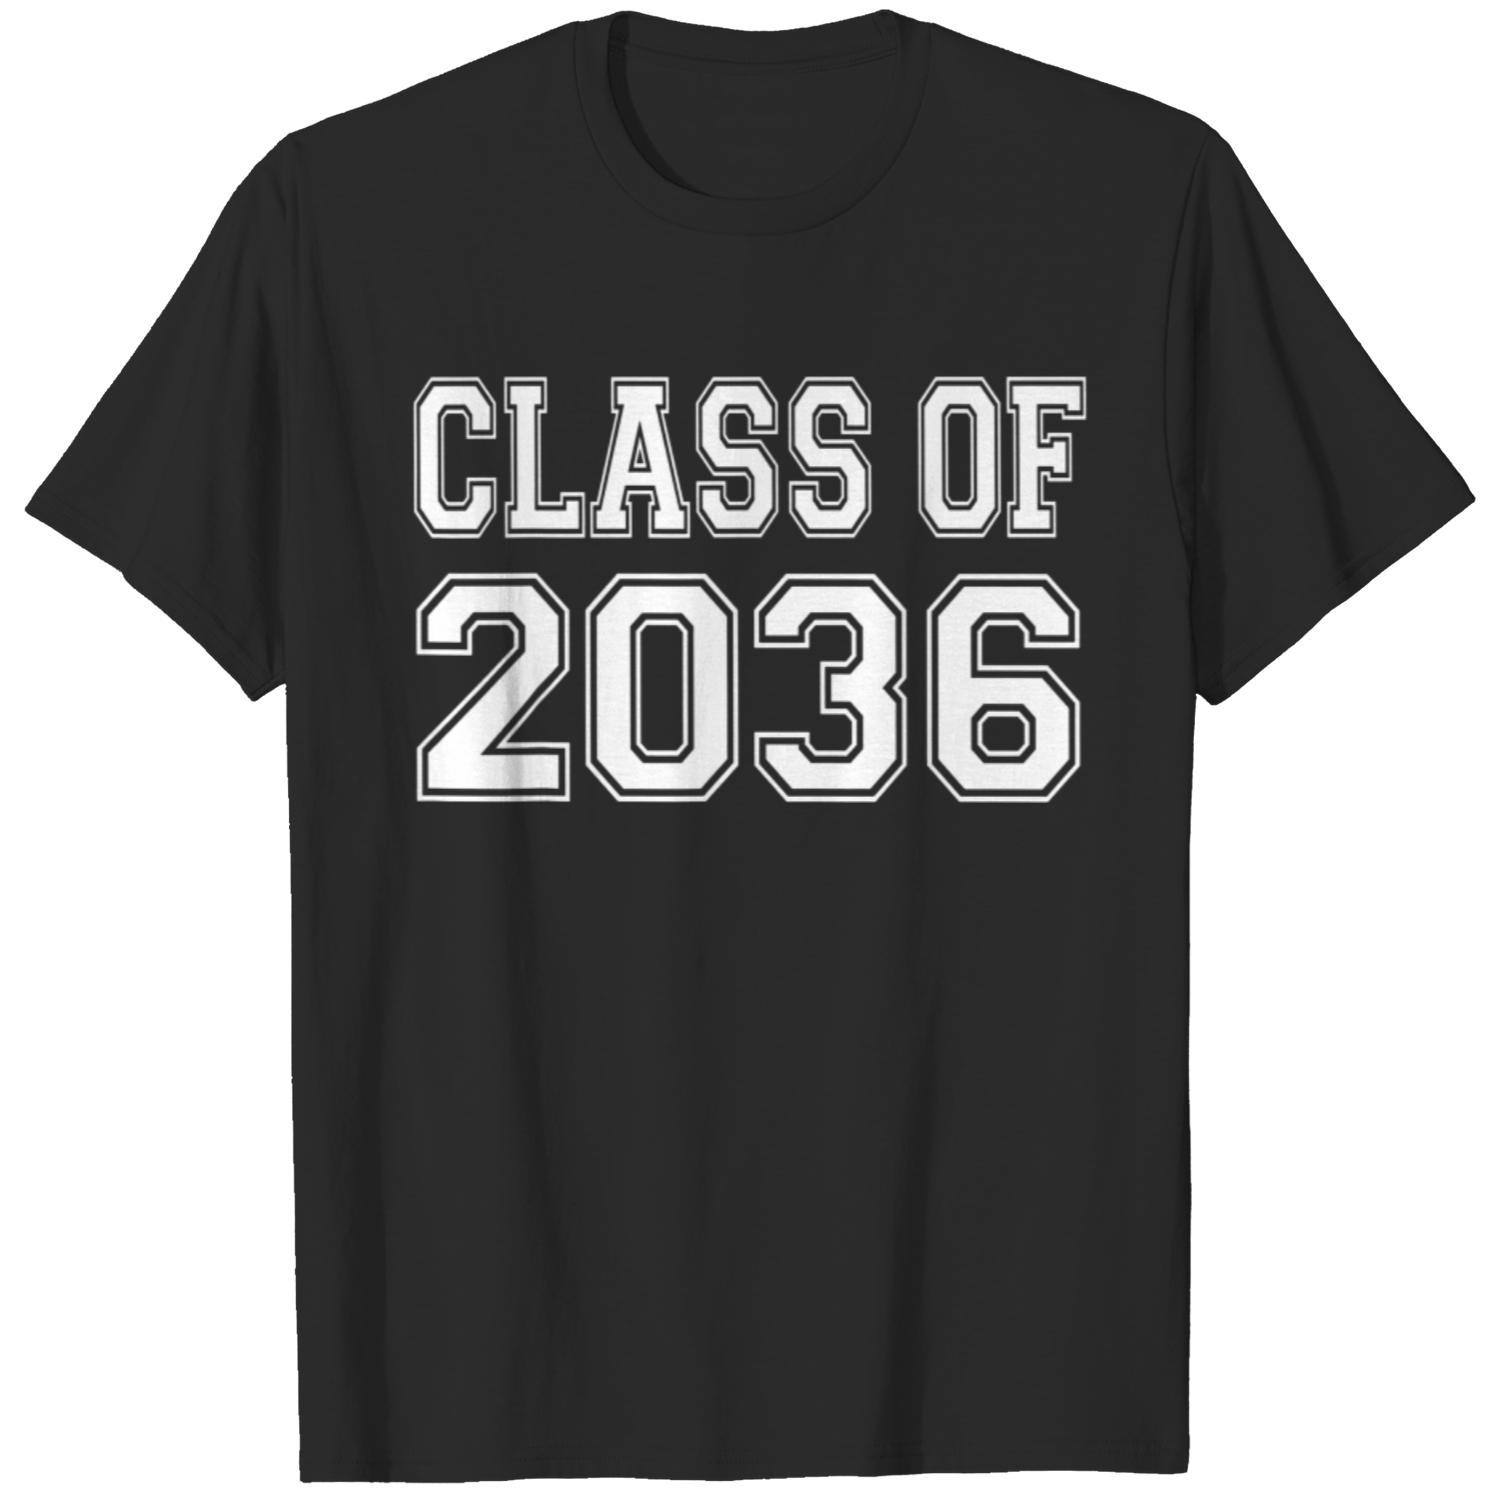 Class Of 2036 T-Shirt